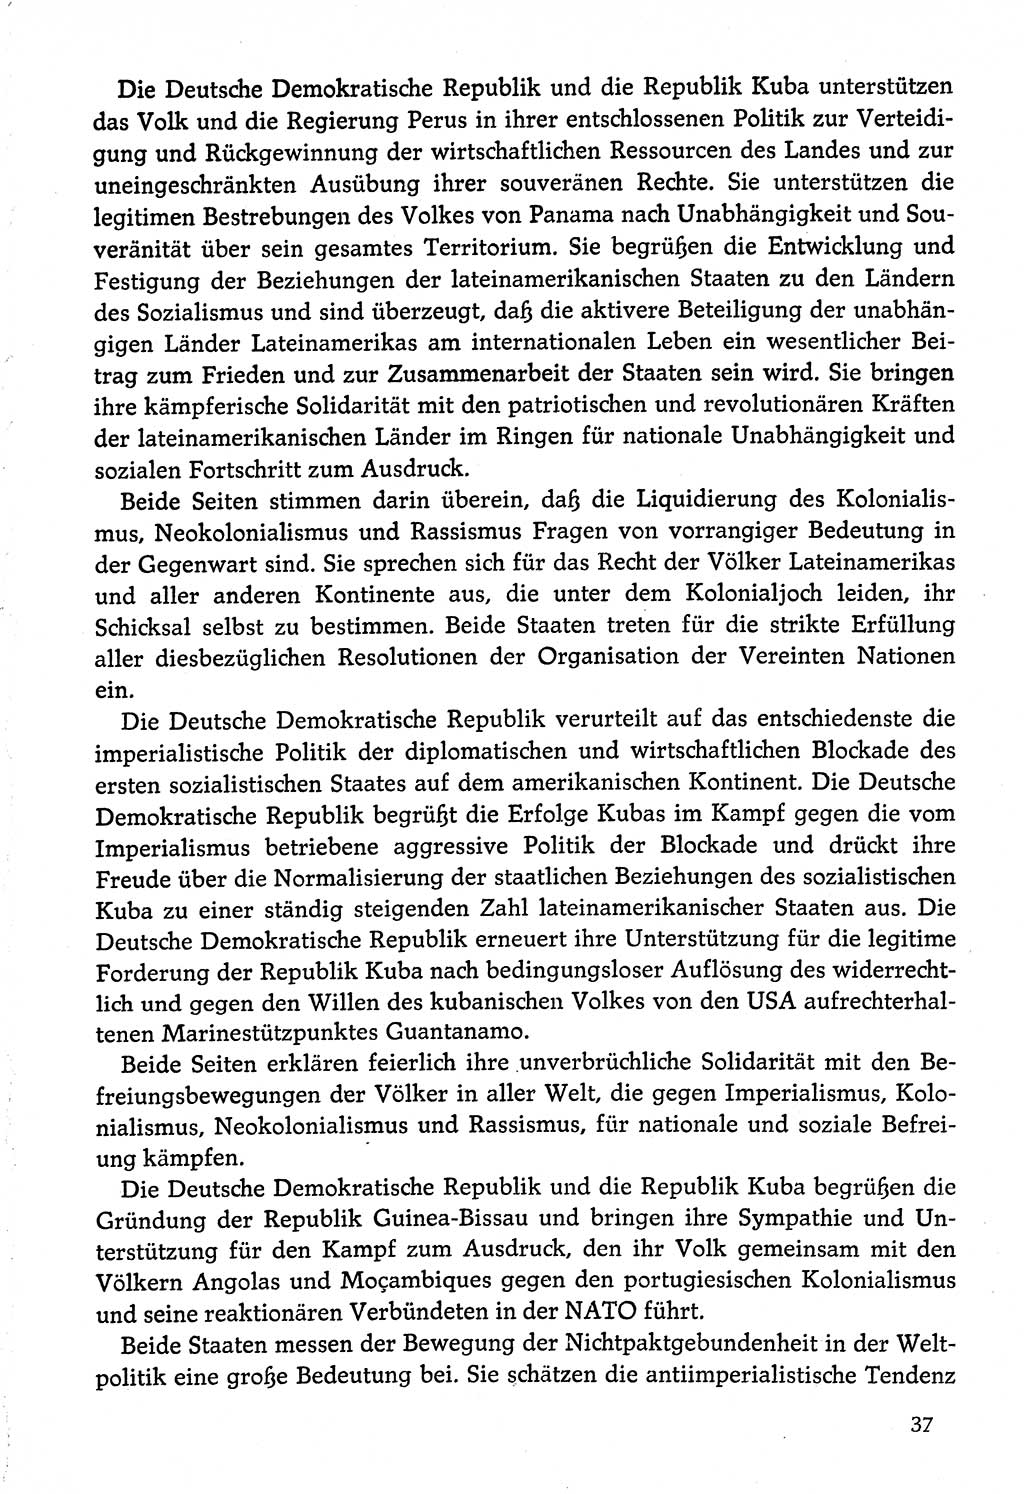 Dokumente der Sozialistischen Einheitspartei Deutschlands (SED) [Deutsche Demokratische Republik (DDR)] 1974-1975, Seite 37 (Dok. SED DDR 1978, Bd. ⅩⅤ, S. 37)